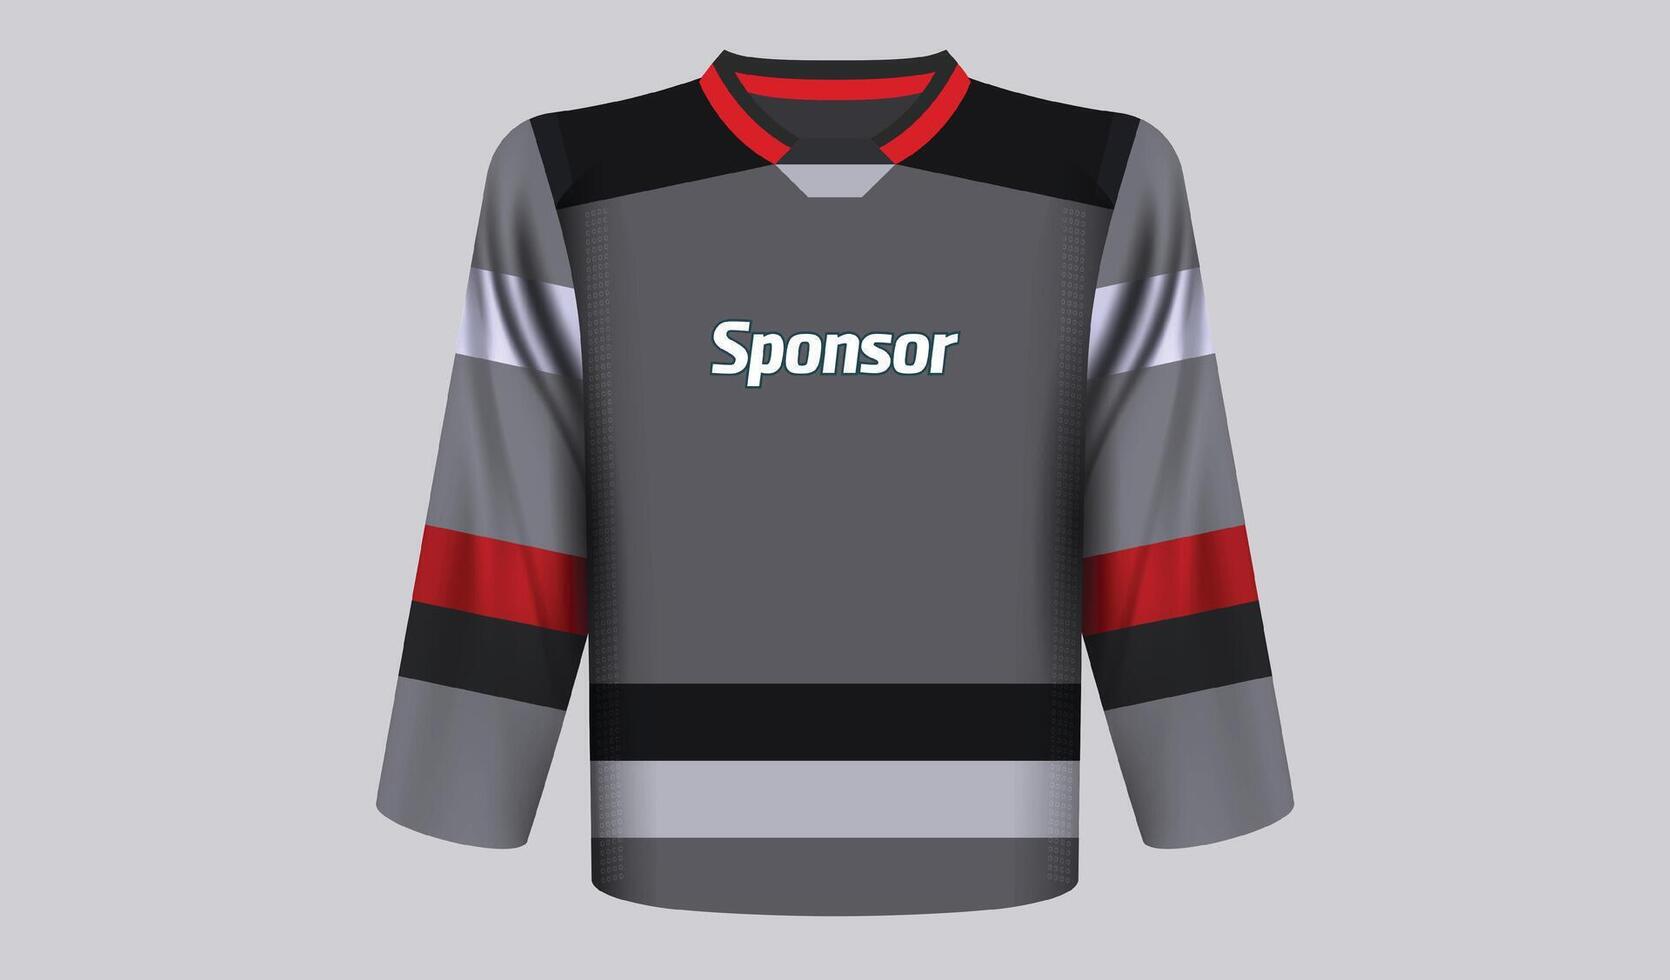 realista hockey jersey diseño vector